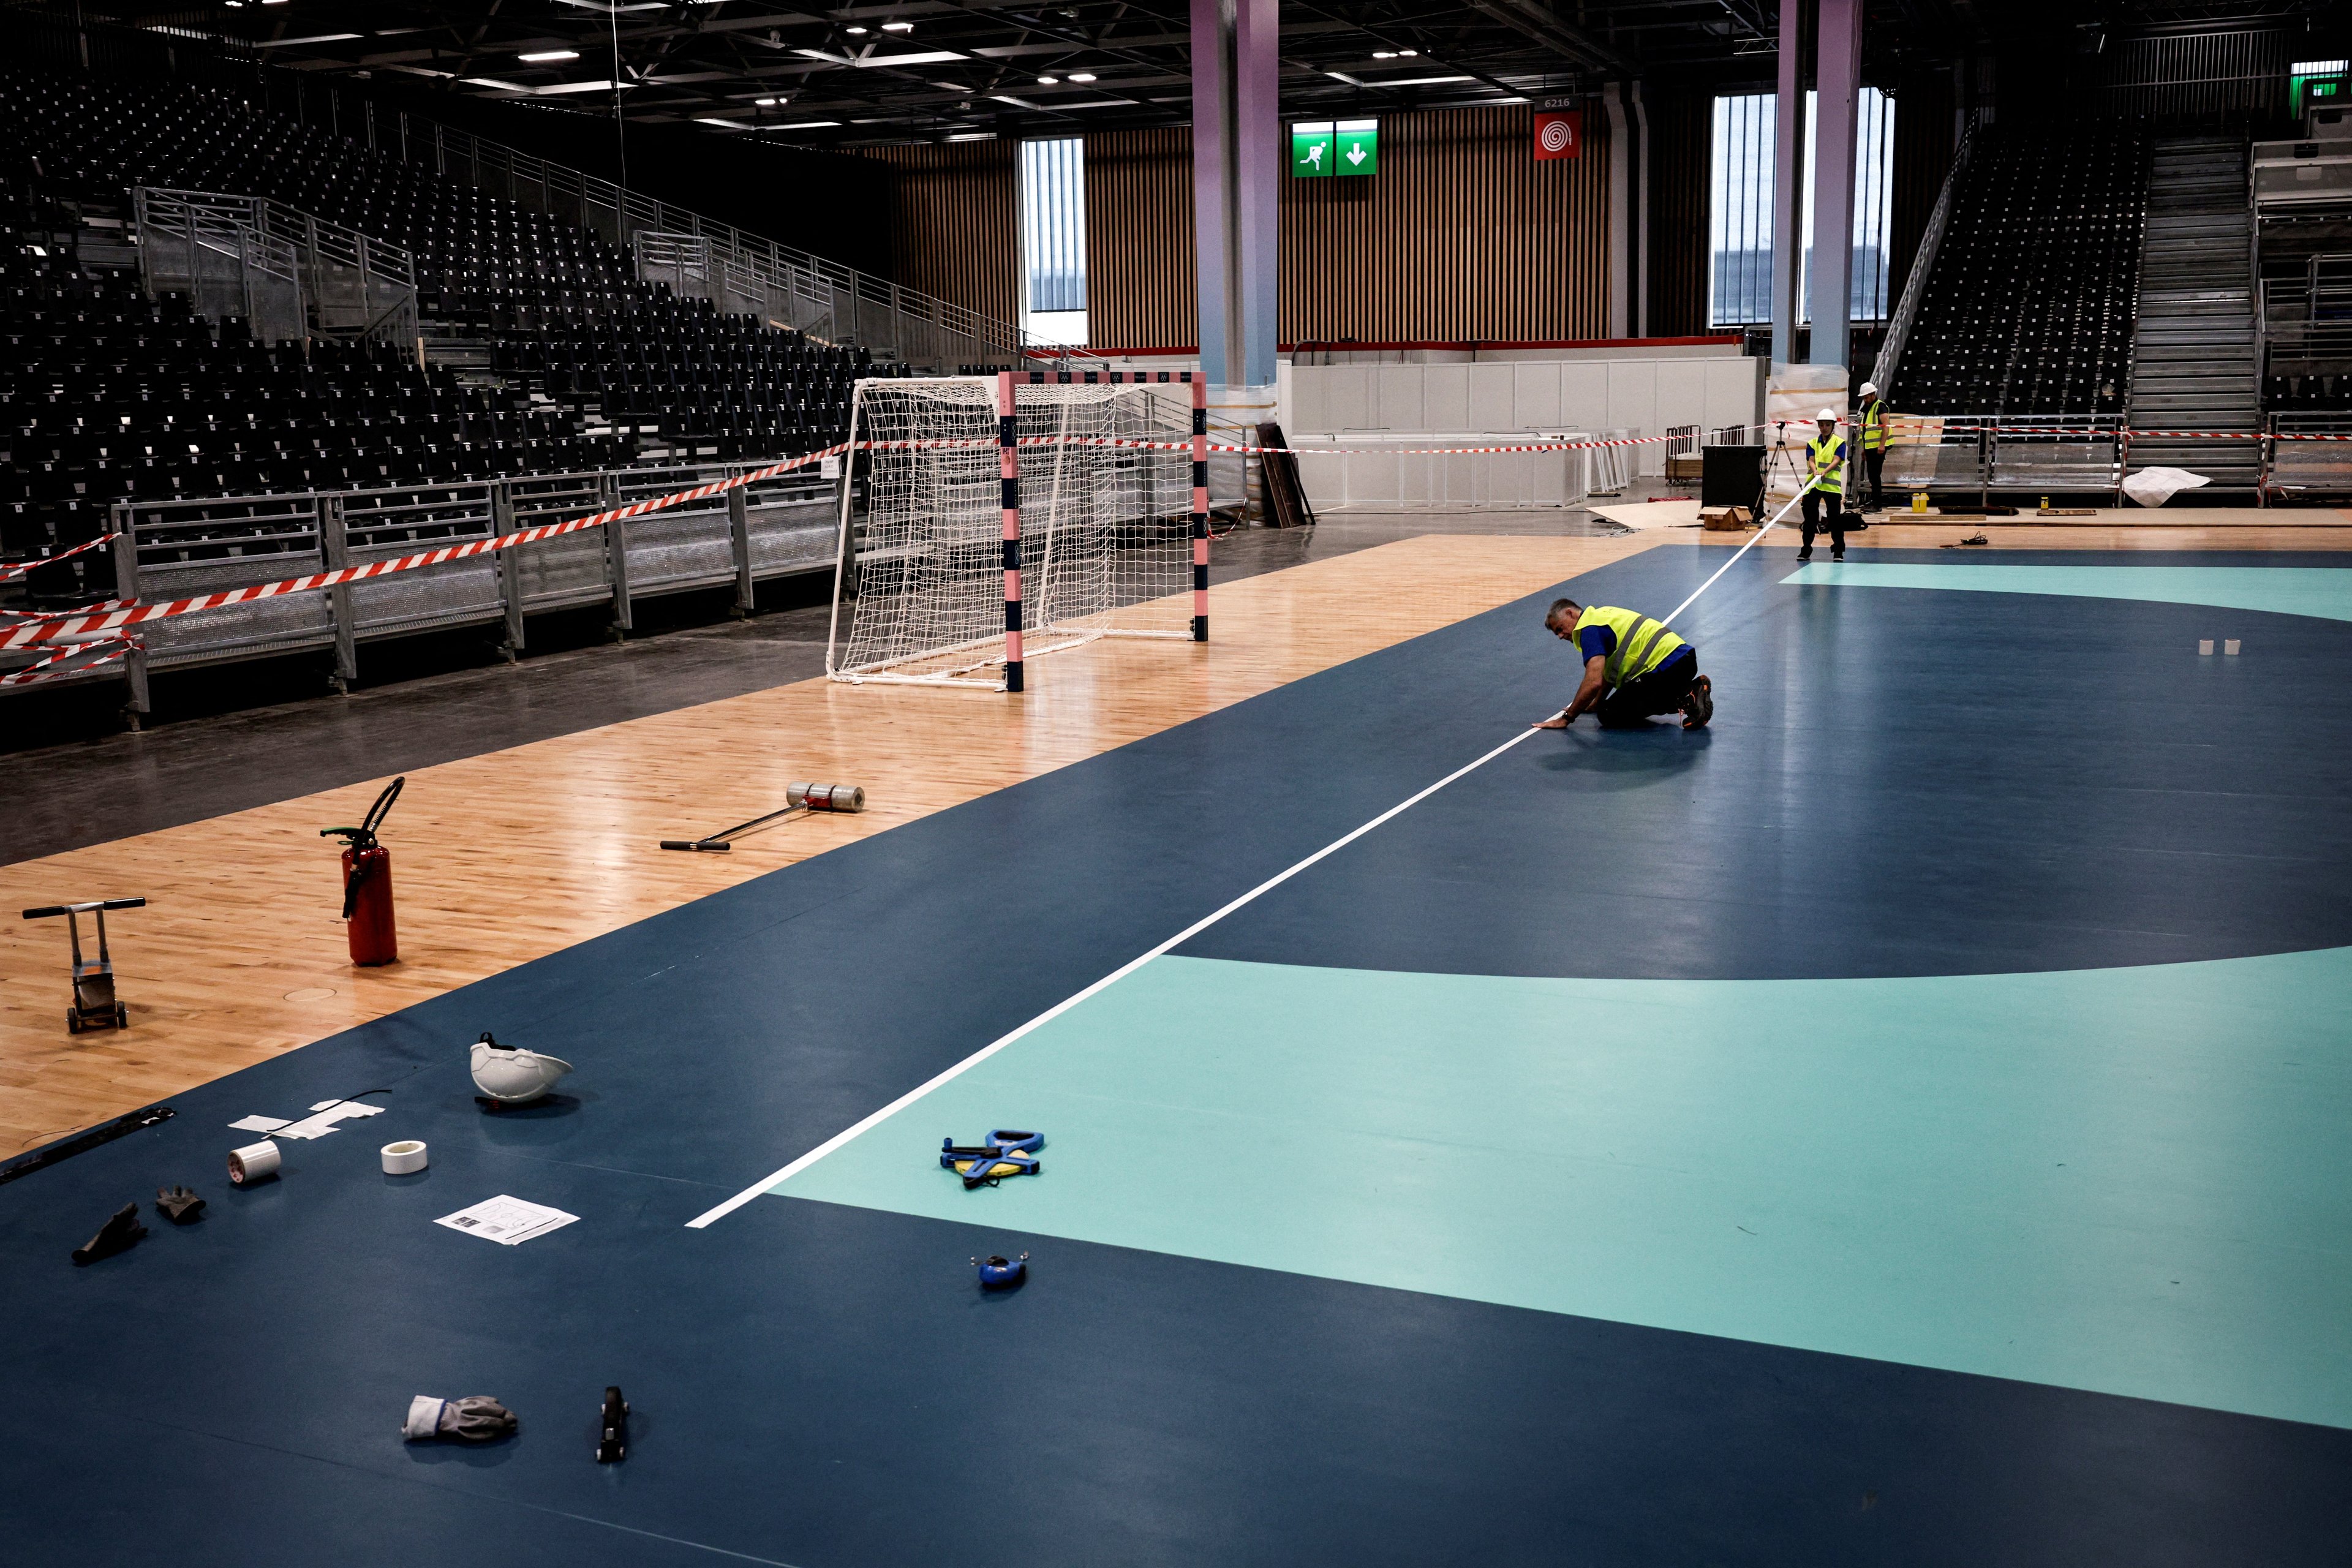 Trabalhadores finalizam a quadra de handebol no Paris Sud Arena, dentro do centro de exposições de Versalhes